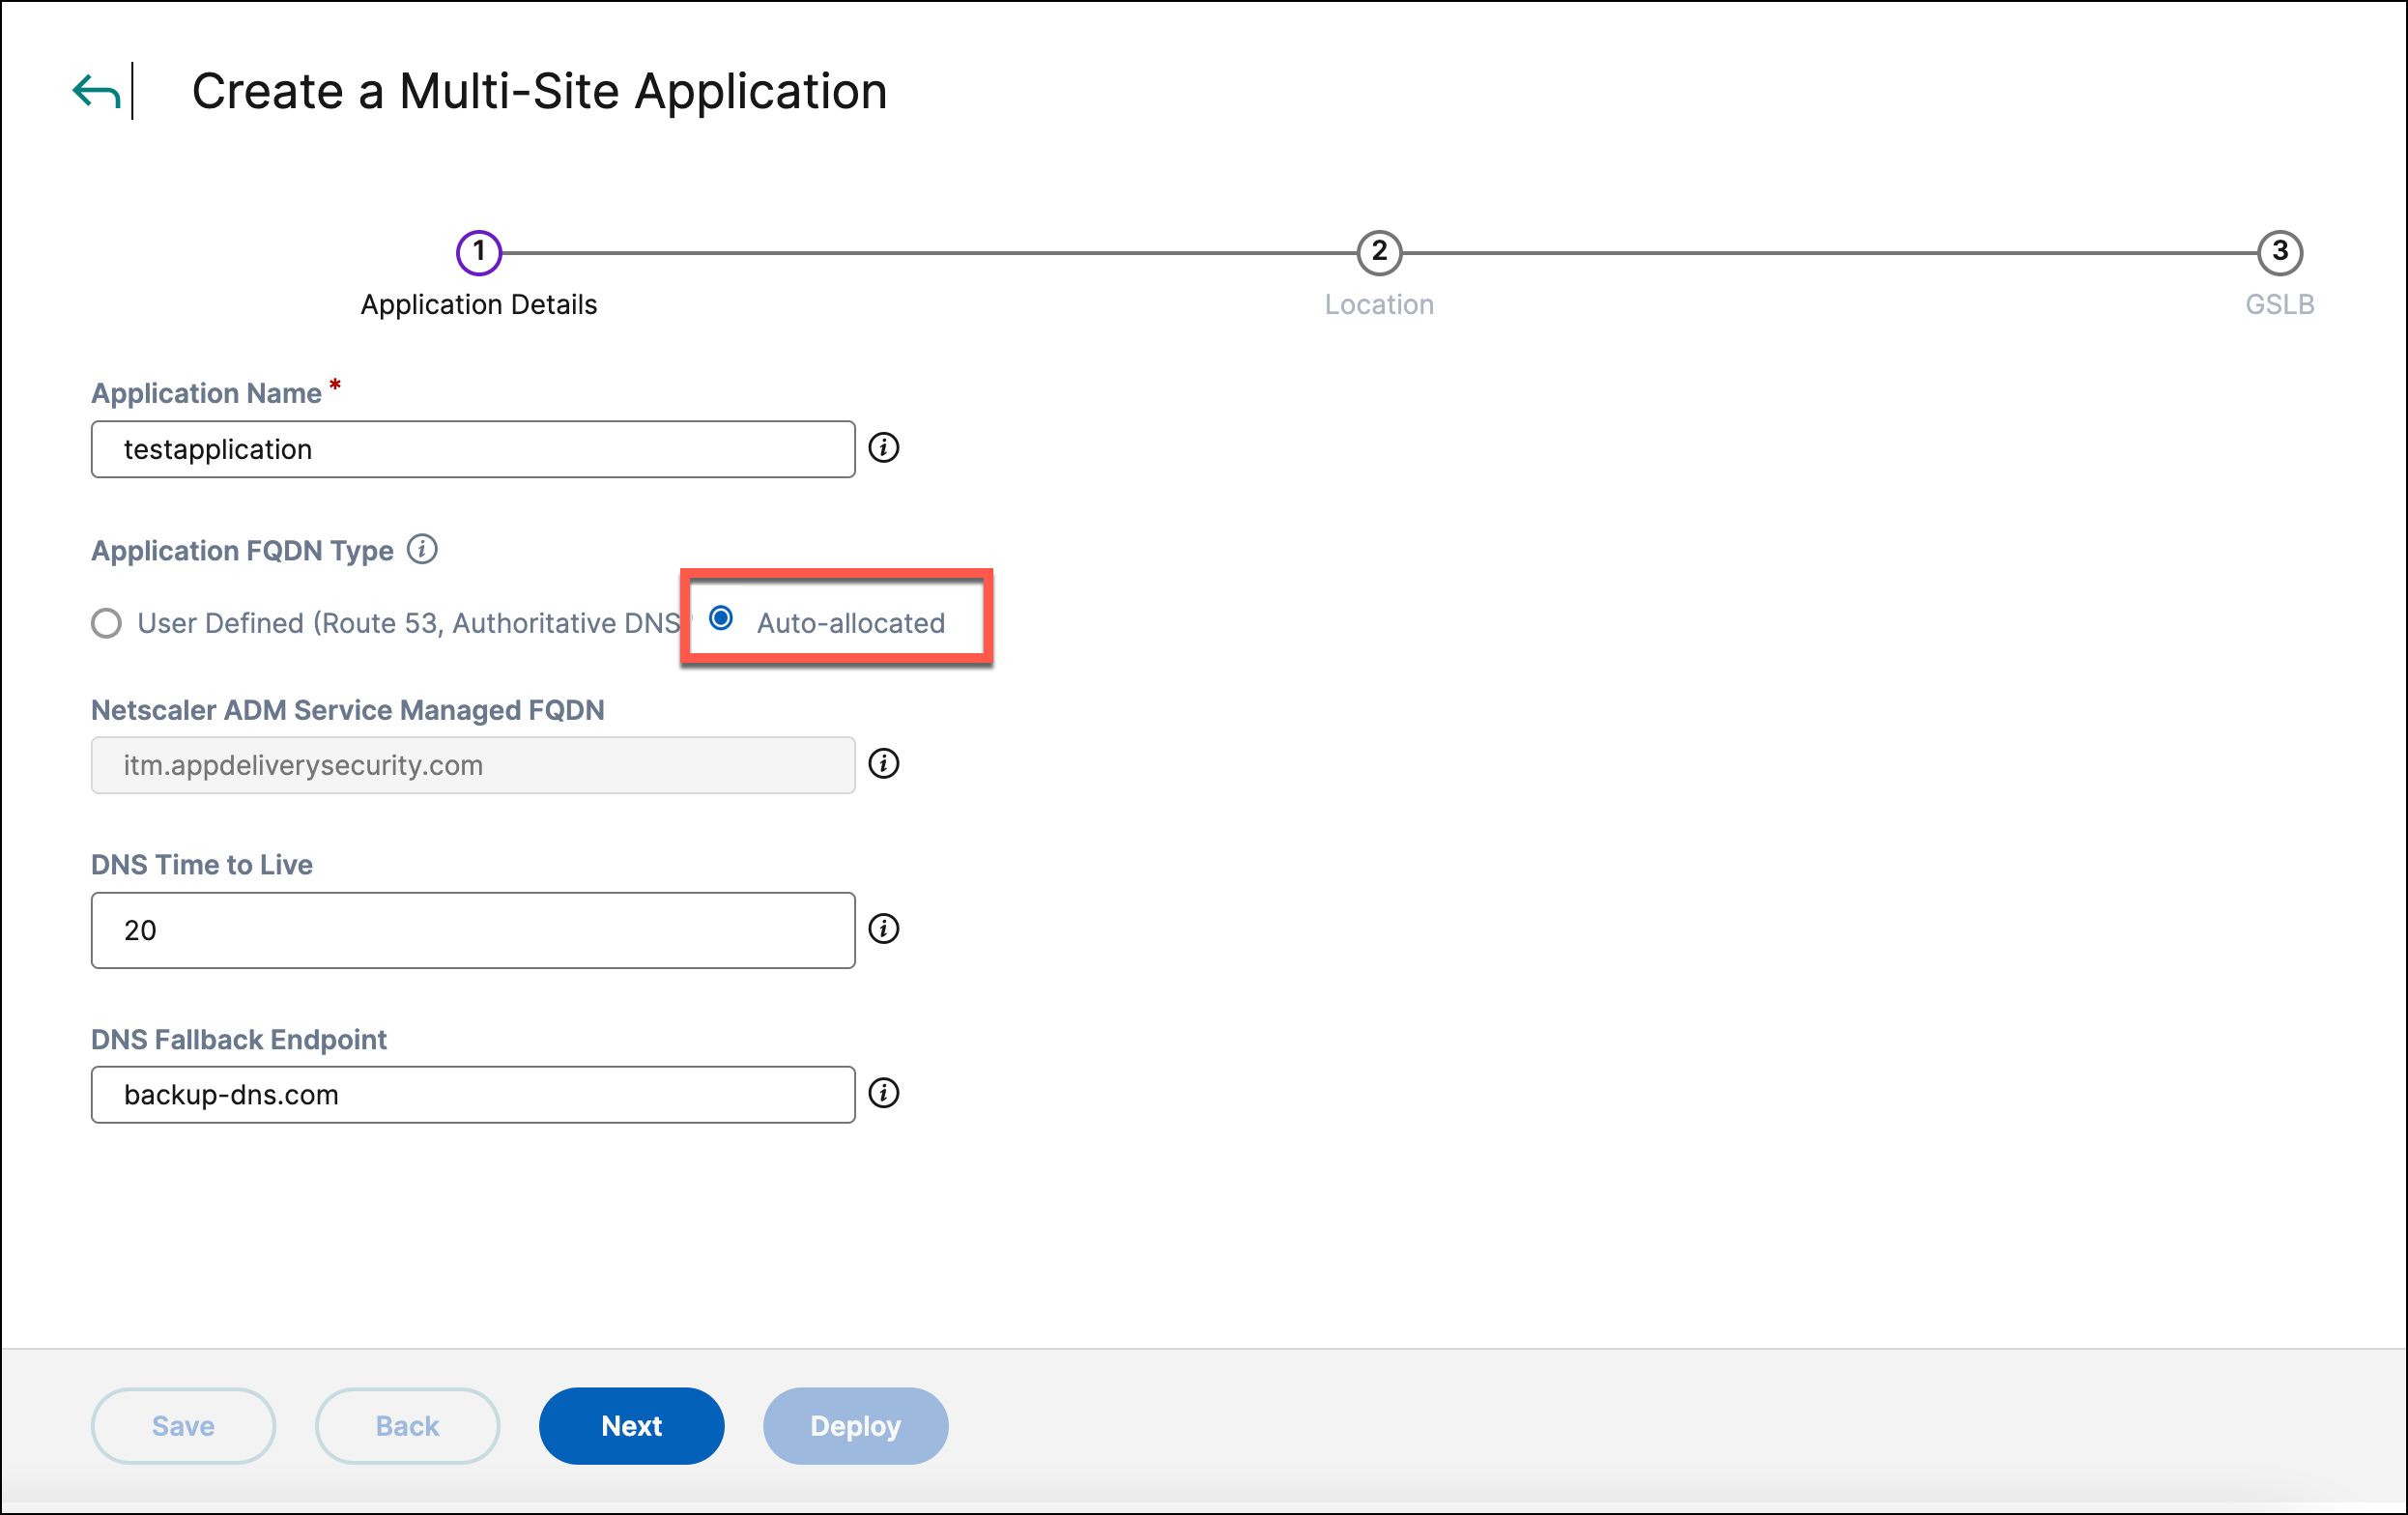 Create an auto-allocated multi-site application